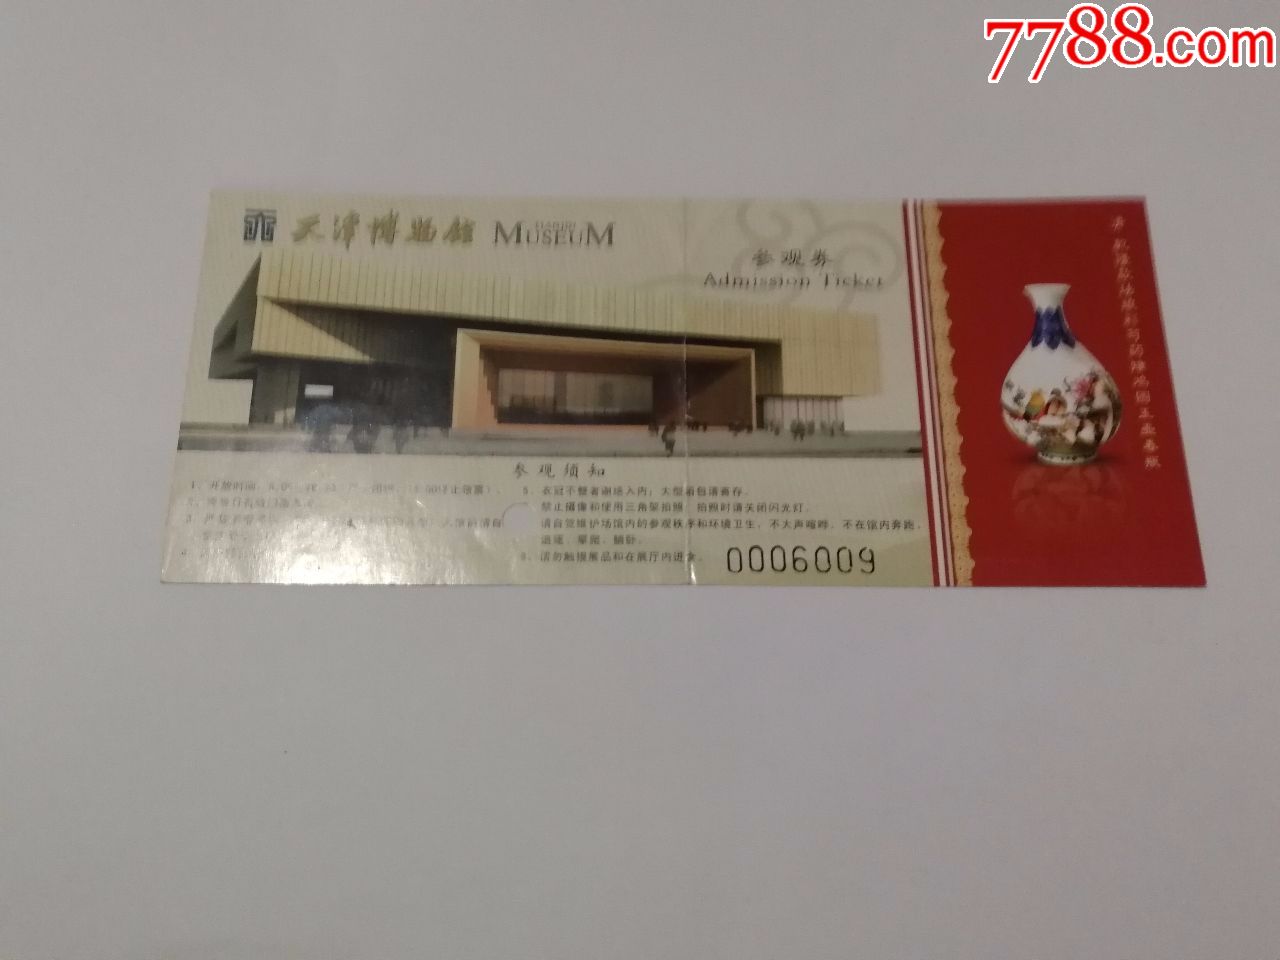 天津博物馆-价格:2.0000元-se58334433-旅游景点门票